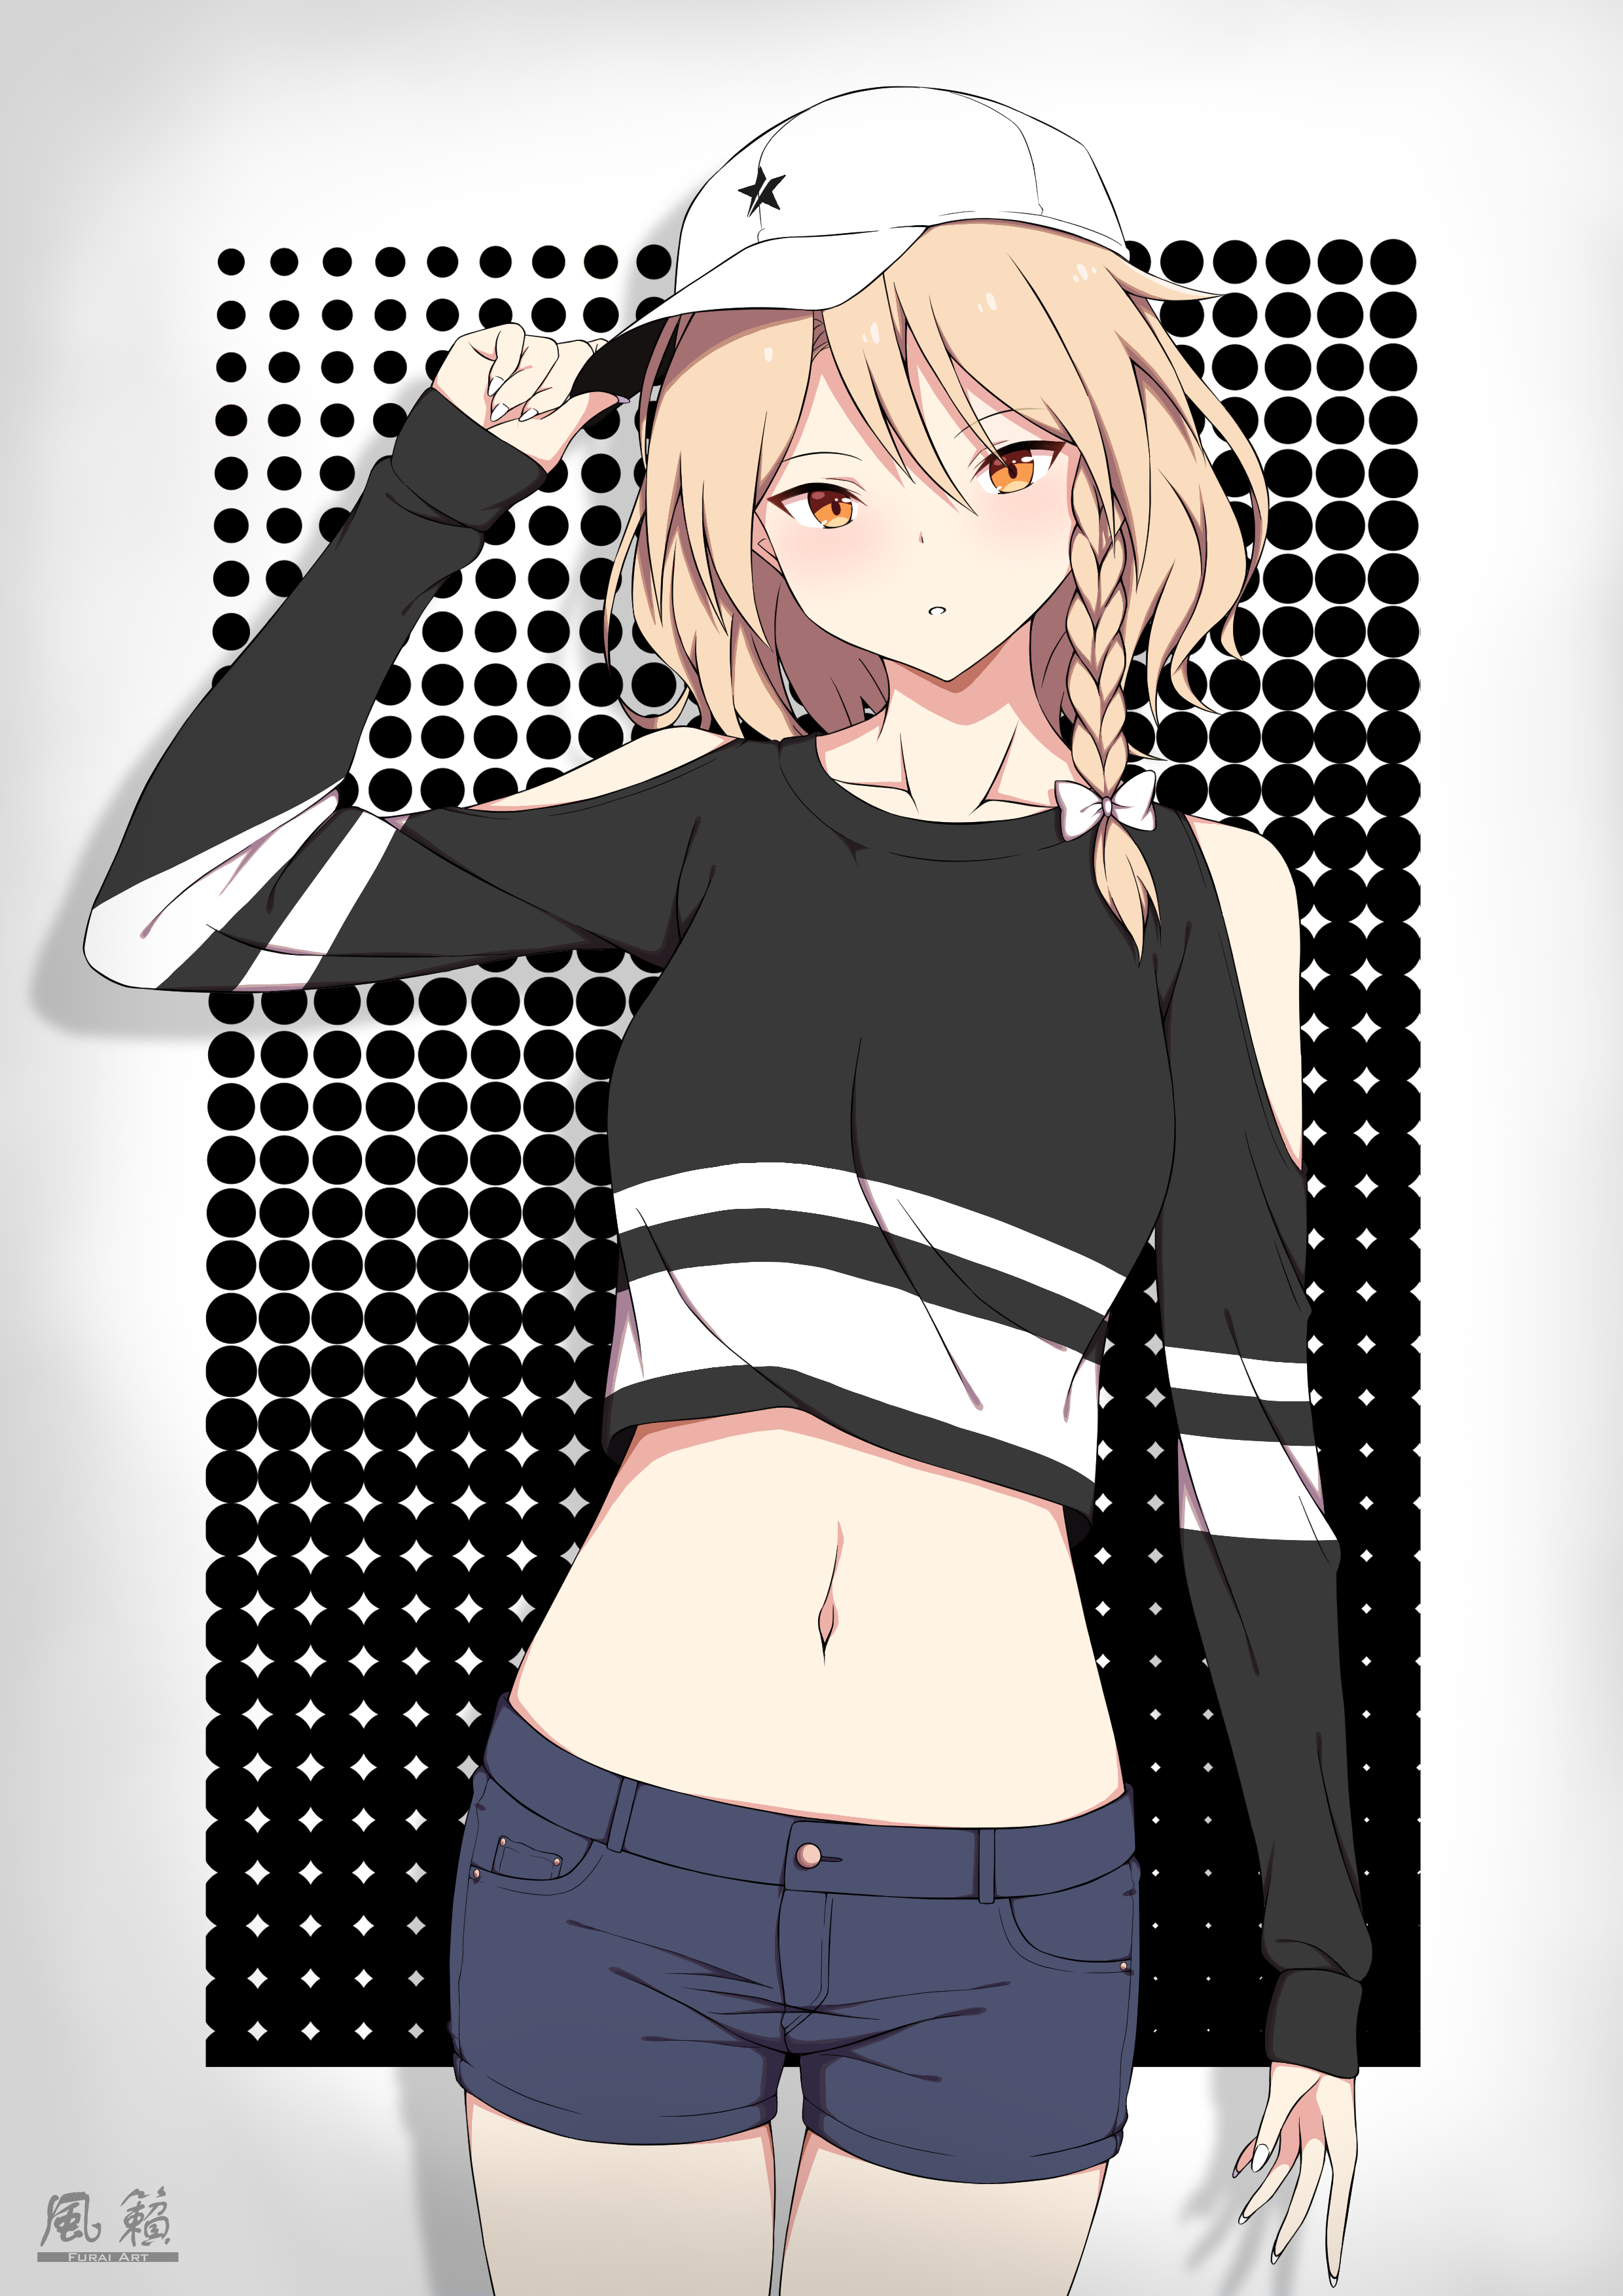 Hat Crop Top Shorts Digital 2D Digital Art Anime Anime Girls Blonde Braided  Hair Short Hair Furai Wallpaper  Resolution2480x3508  ID1272344   wallhacom